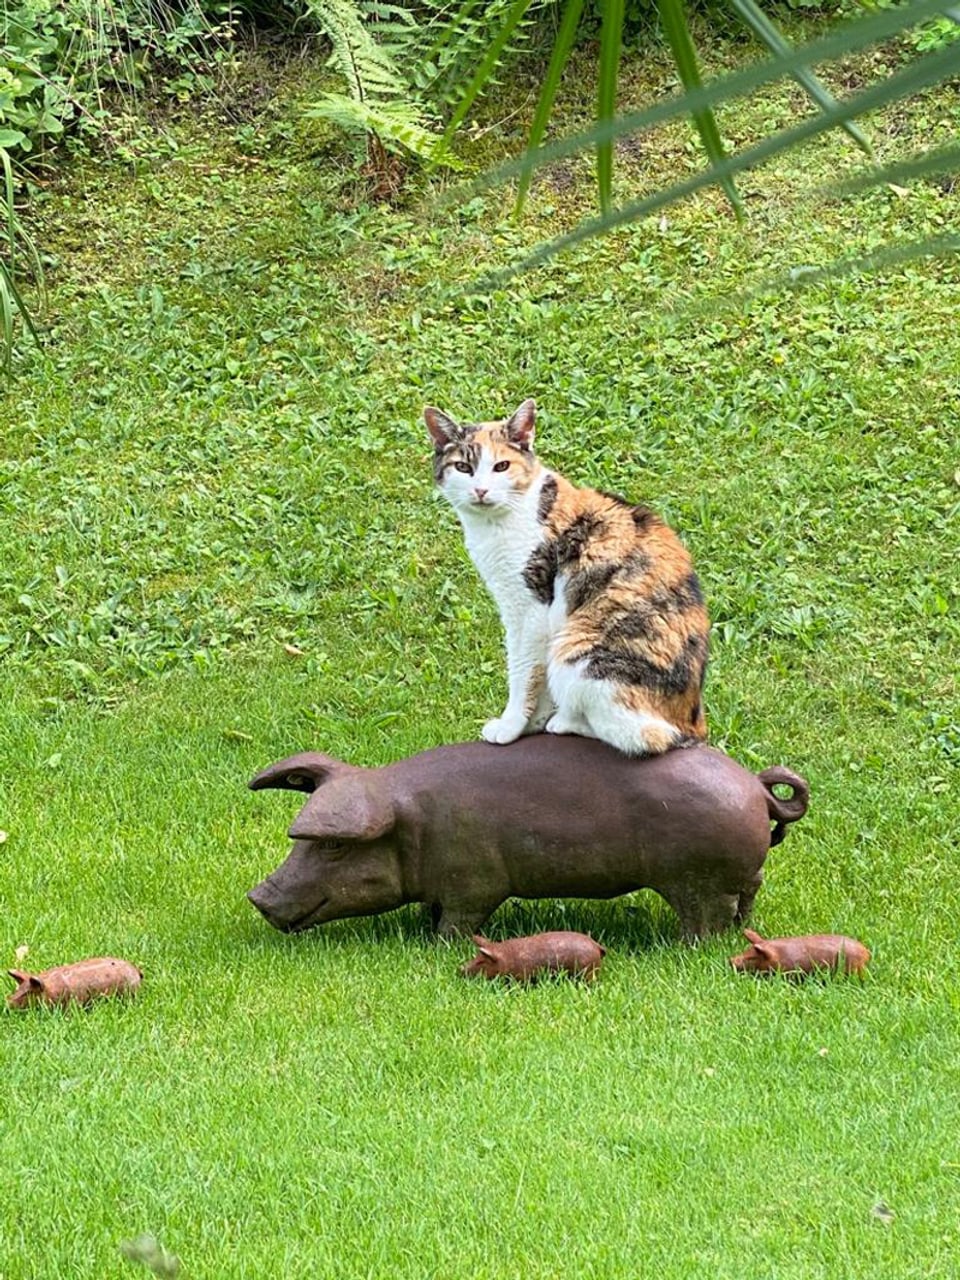 Katze sitzstolz auf Deko-Schwein.